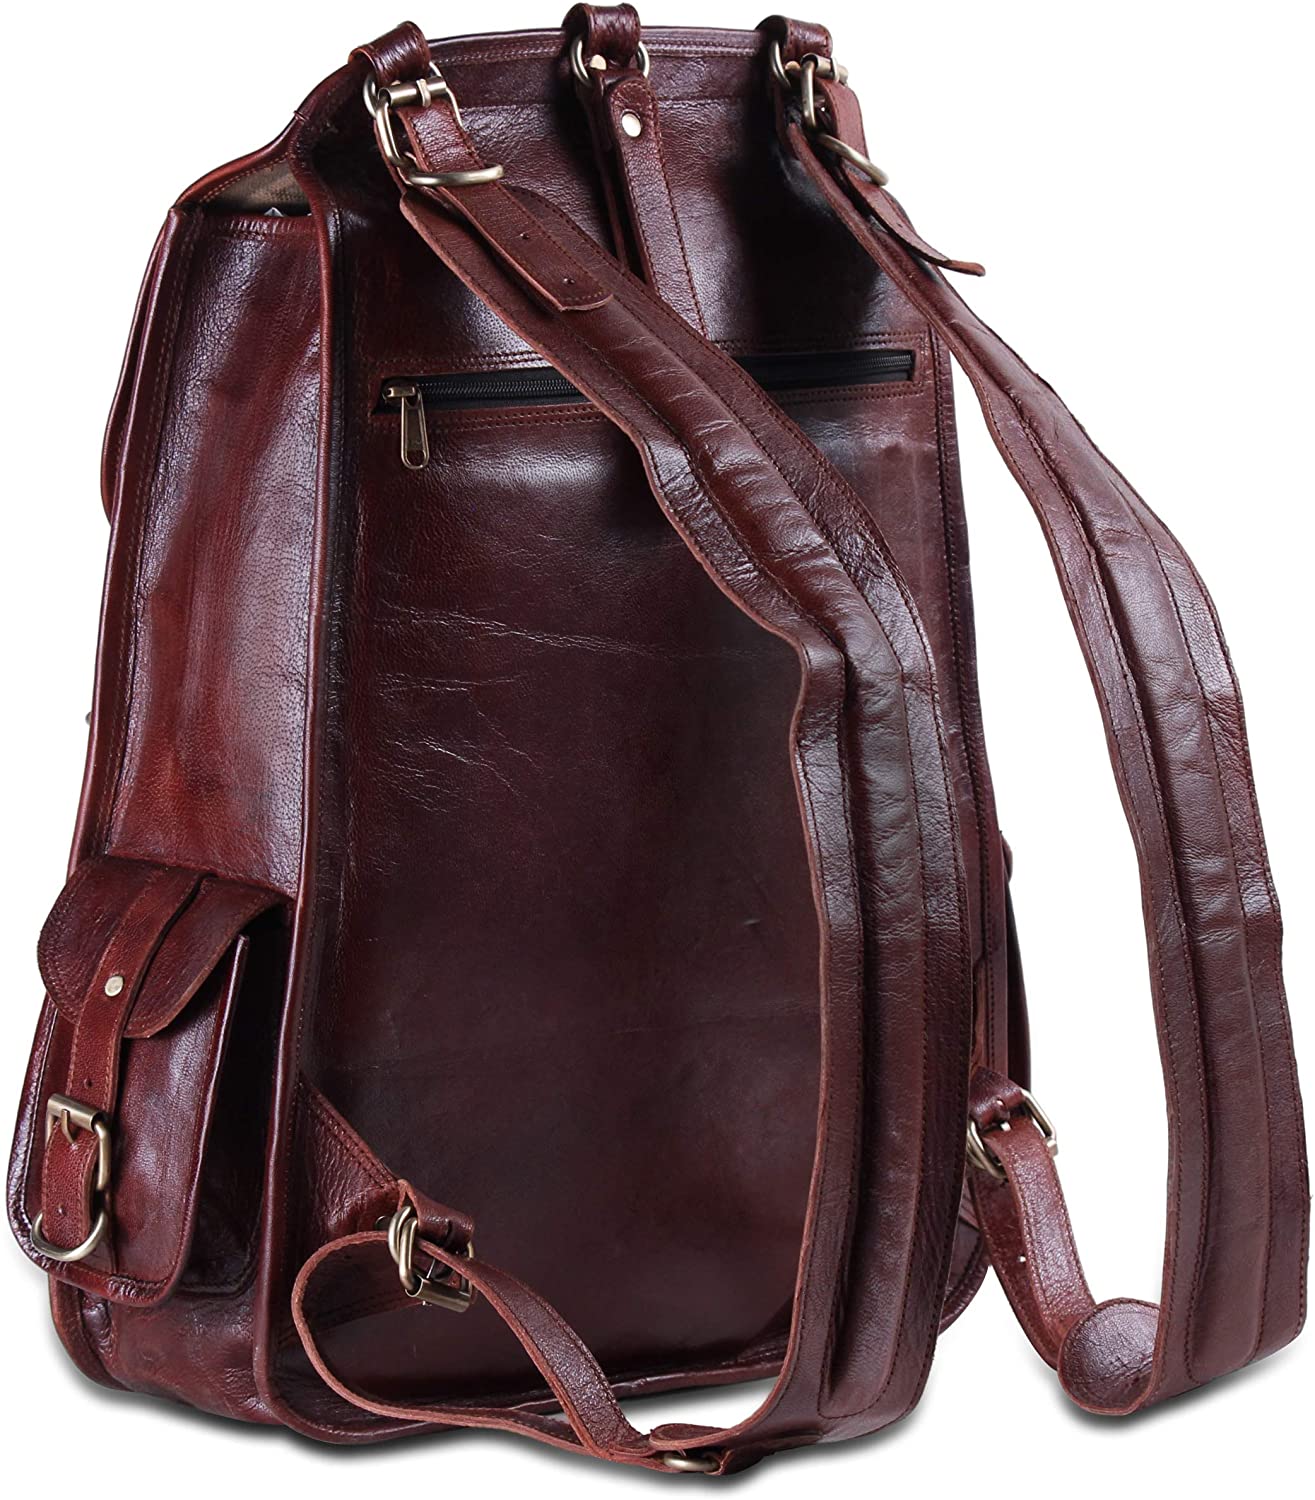 stylish laptop leather backpack